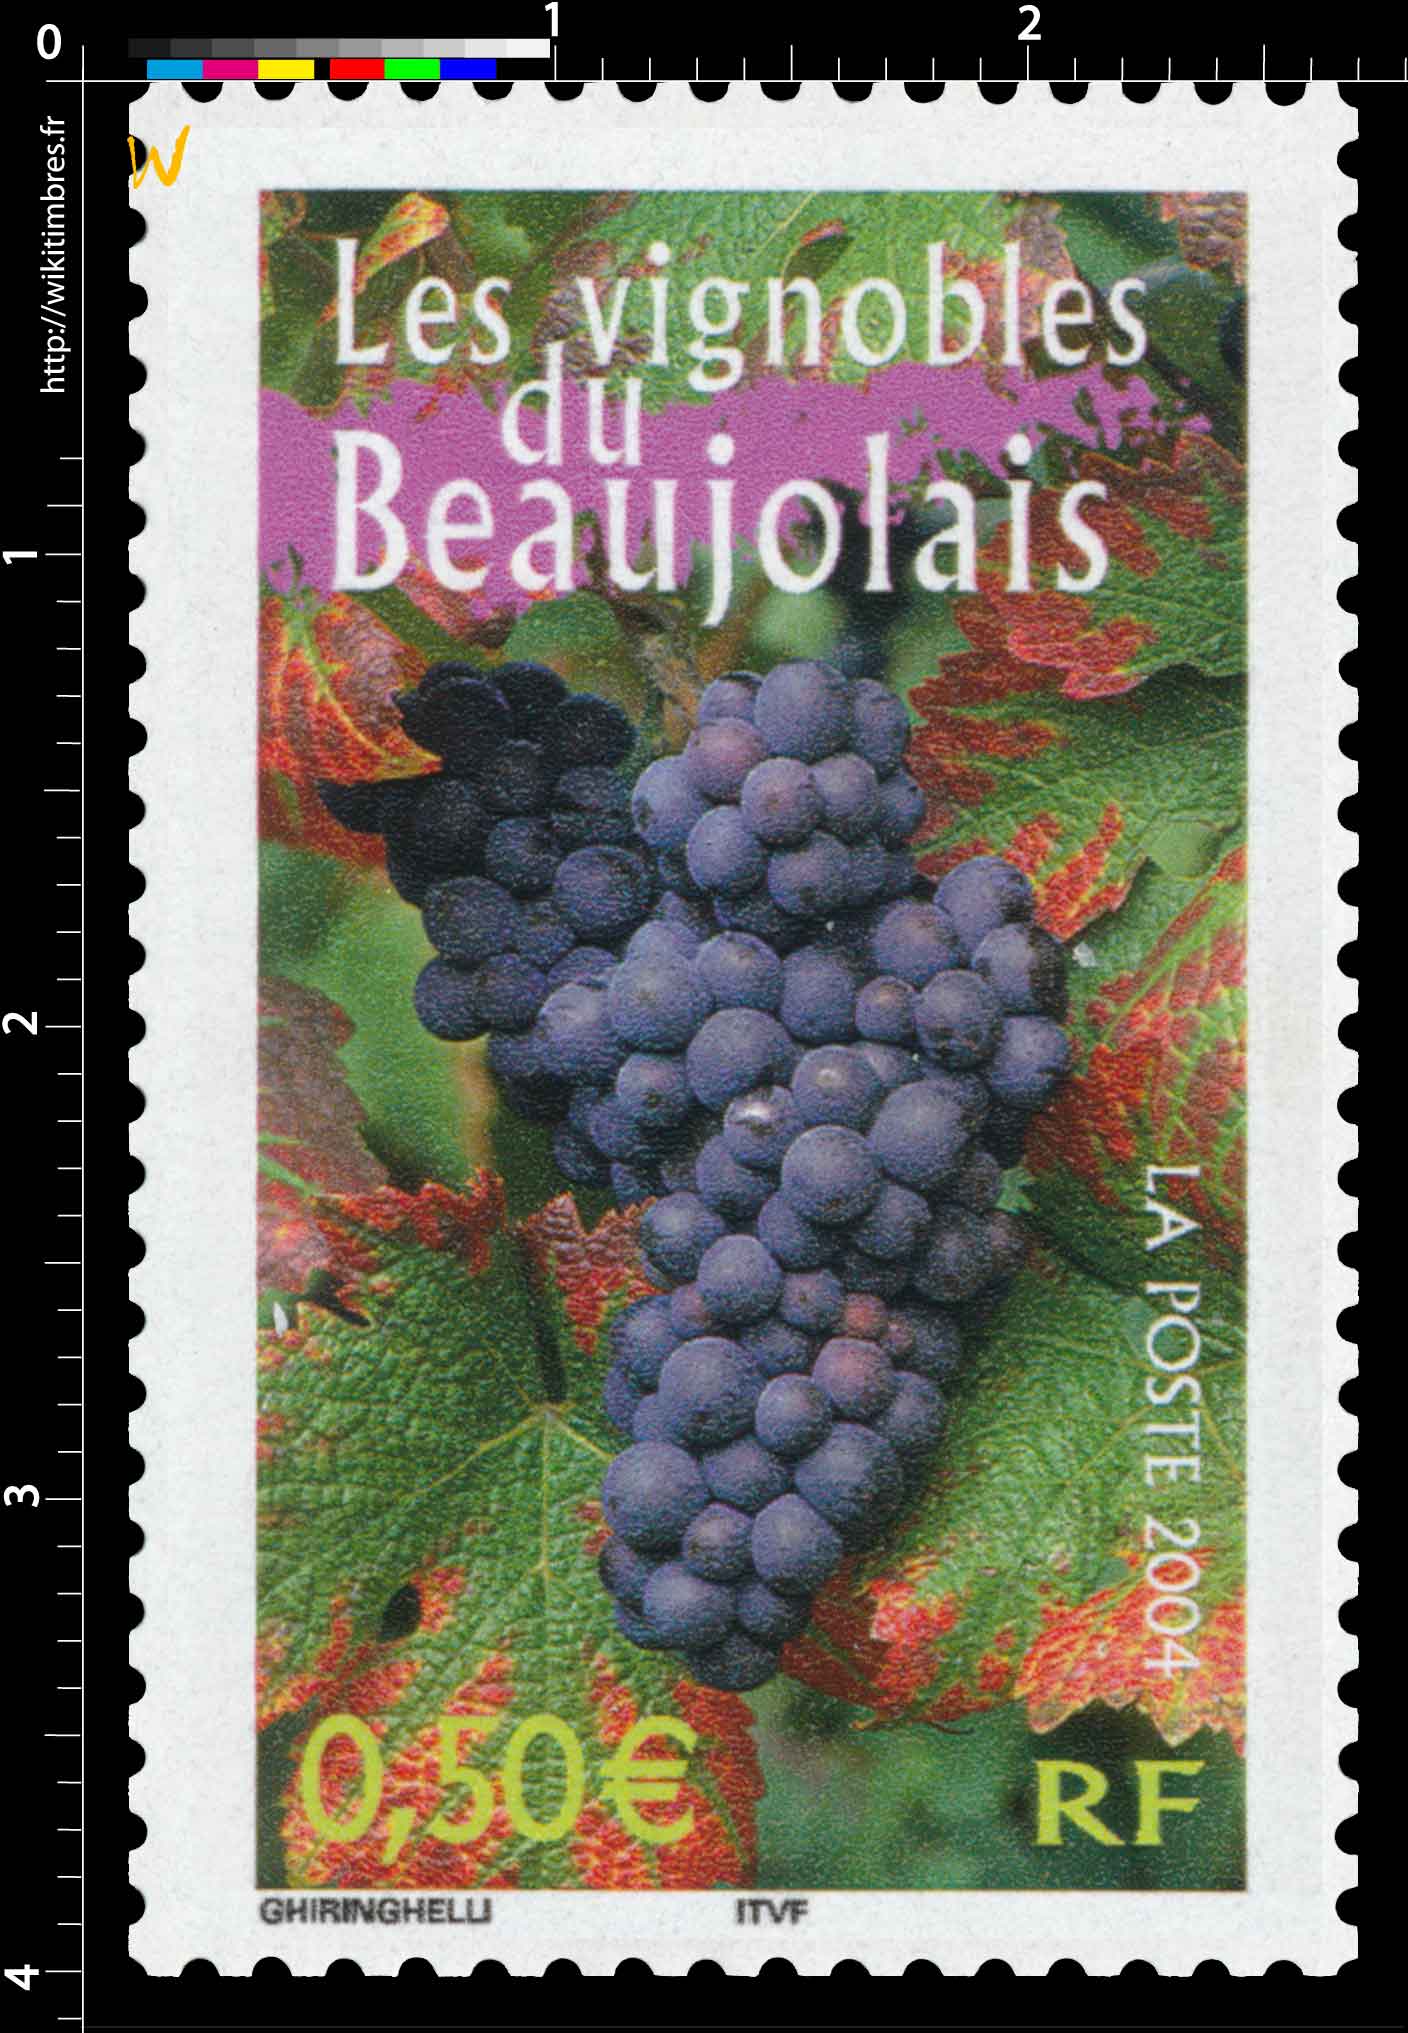 2004 Les vignobles du Beaujolais